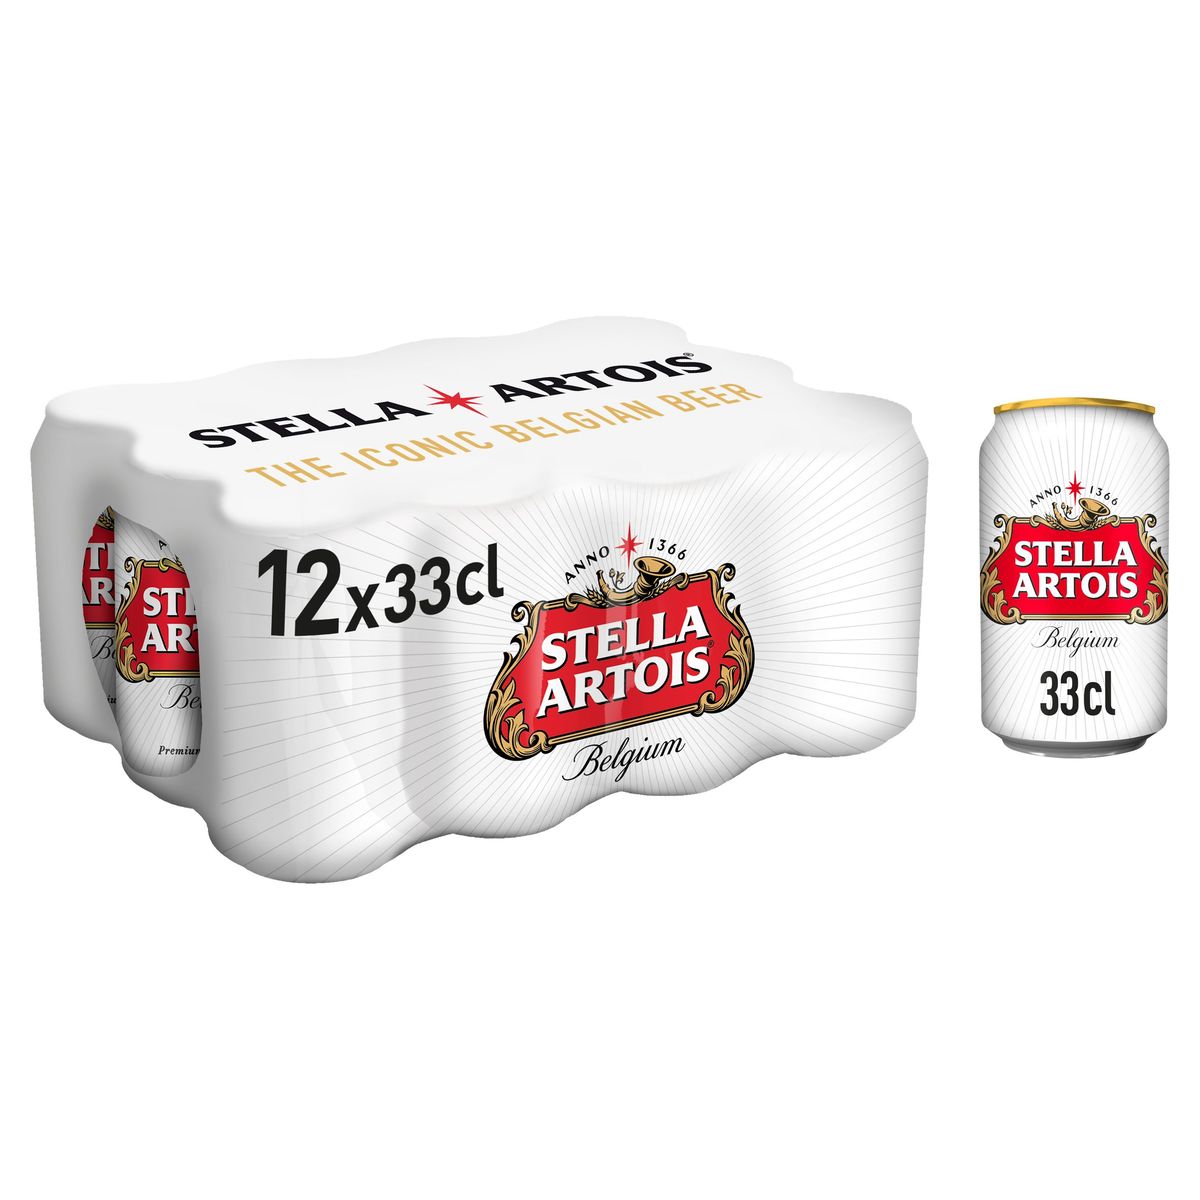 Stella Artois Belgium Premium Lager Beer Canettes 12 x 33 cl